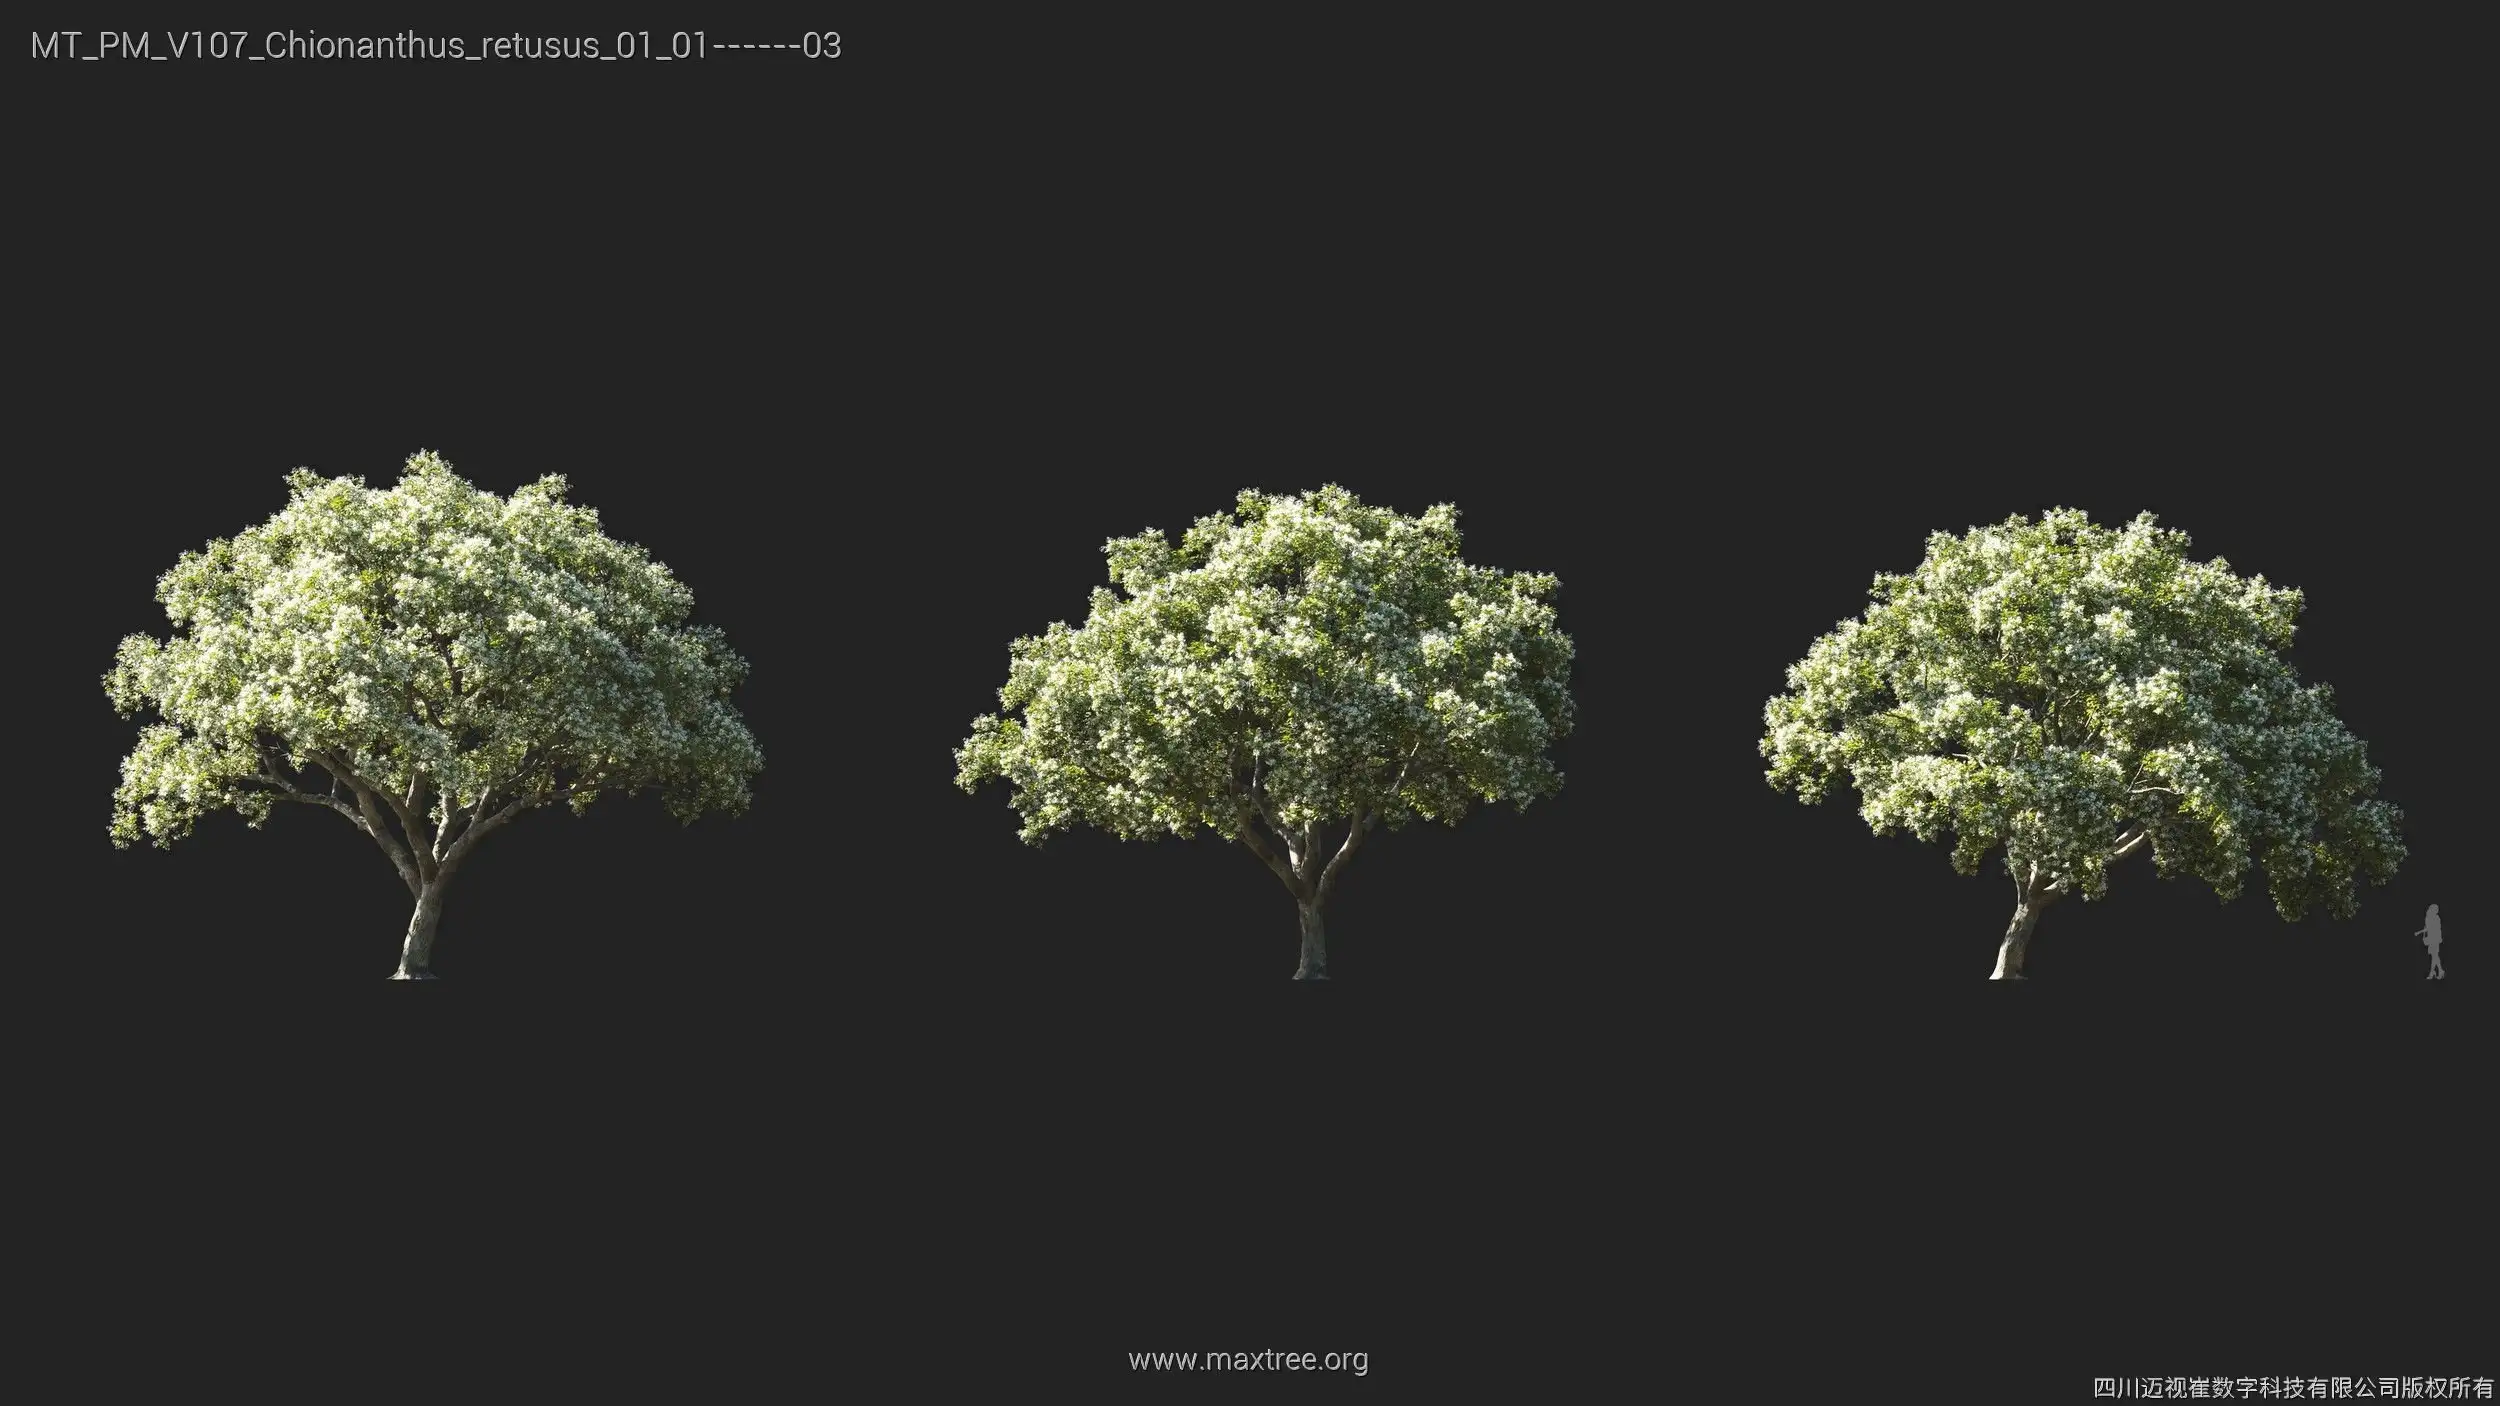 دانلود 72 مدل سه بعدی درخت - 8